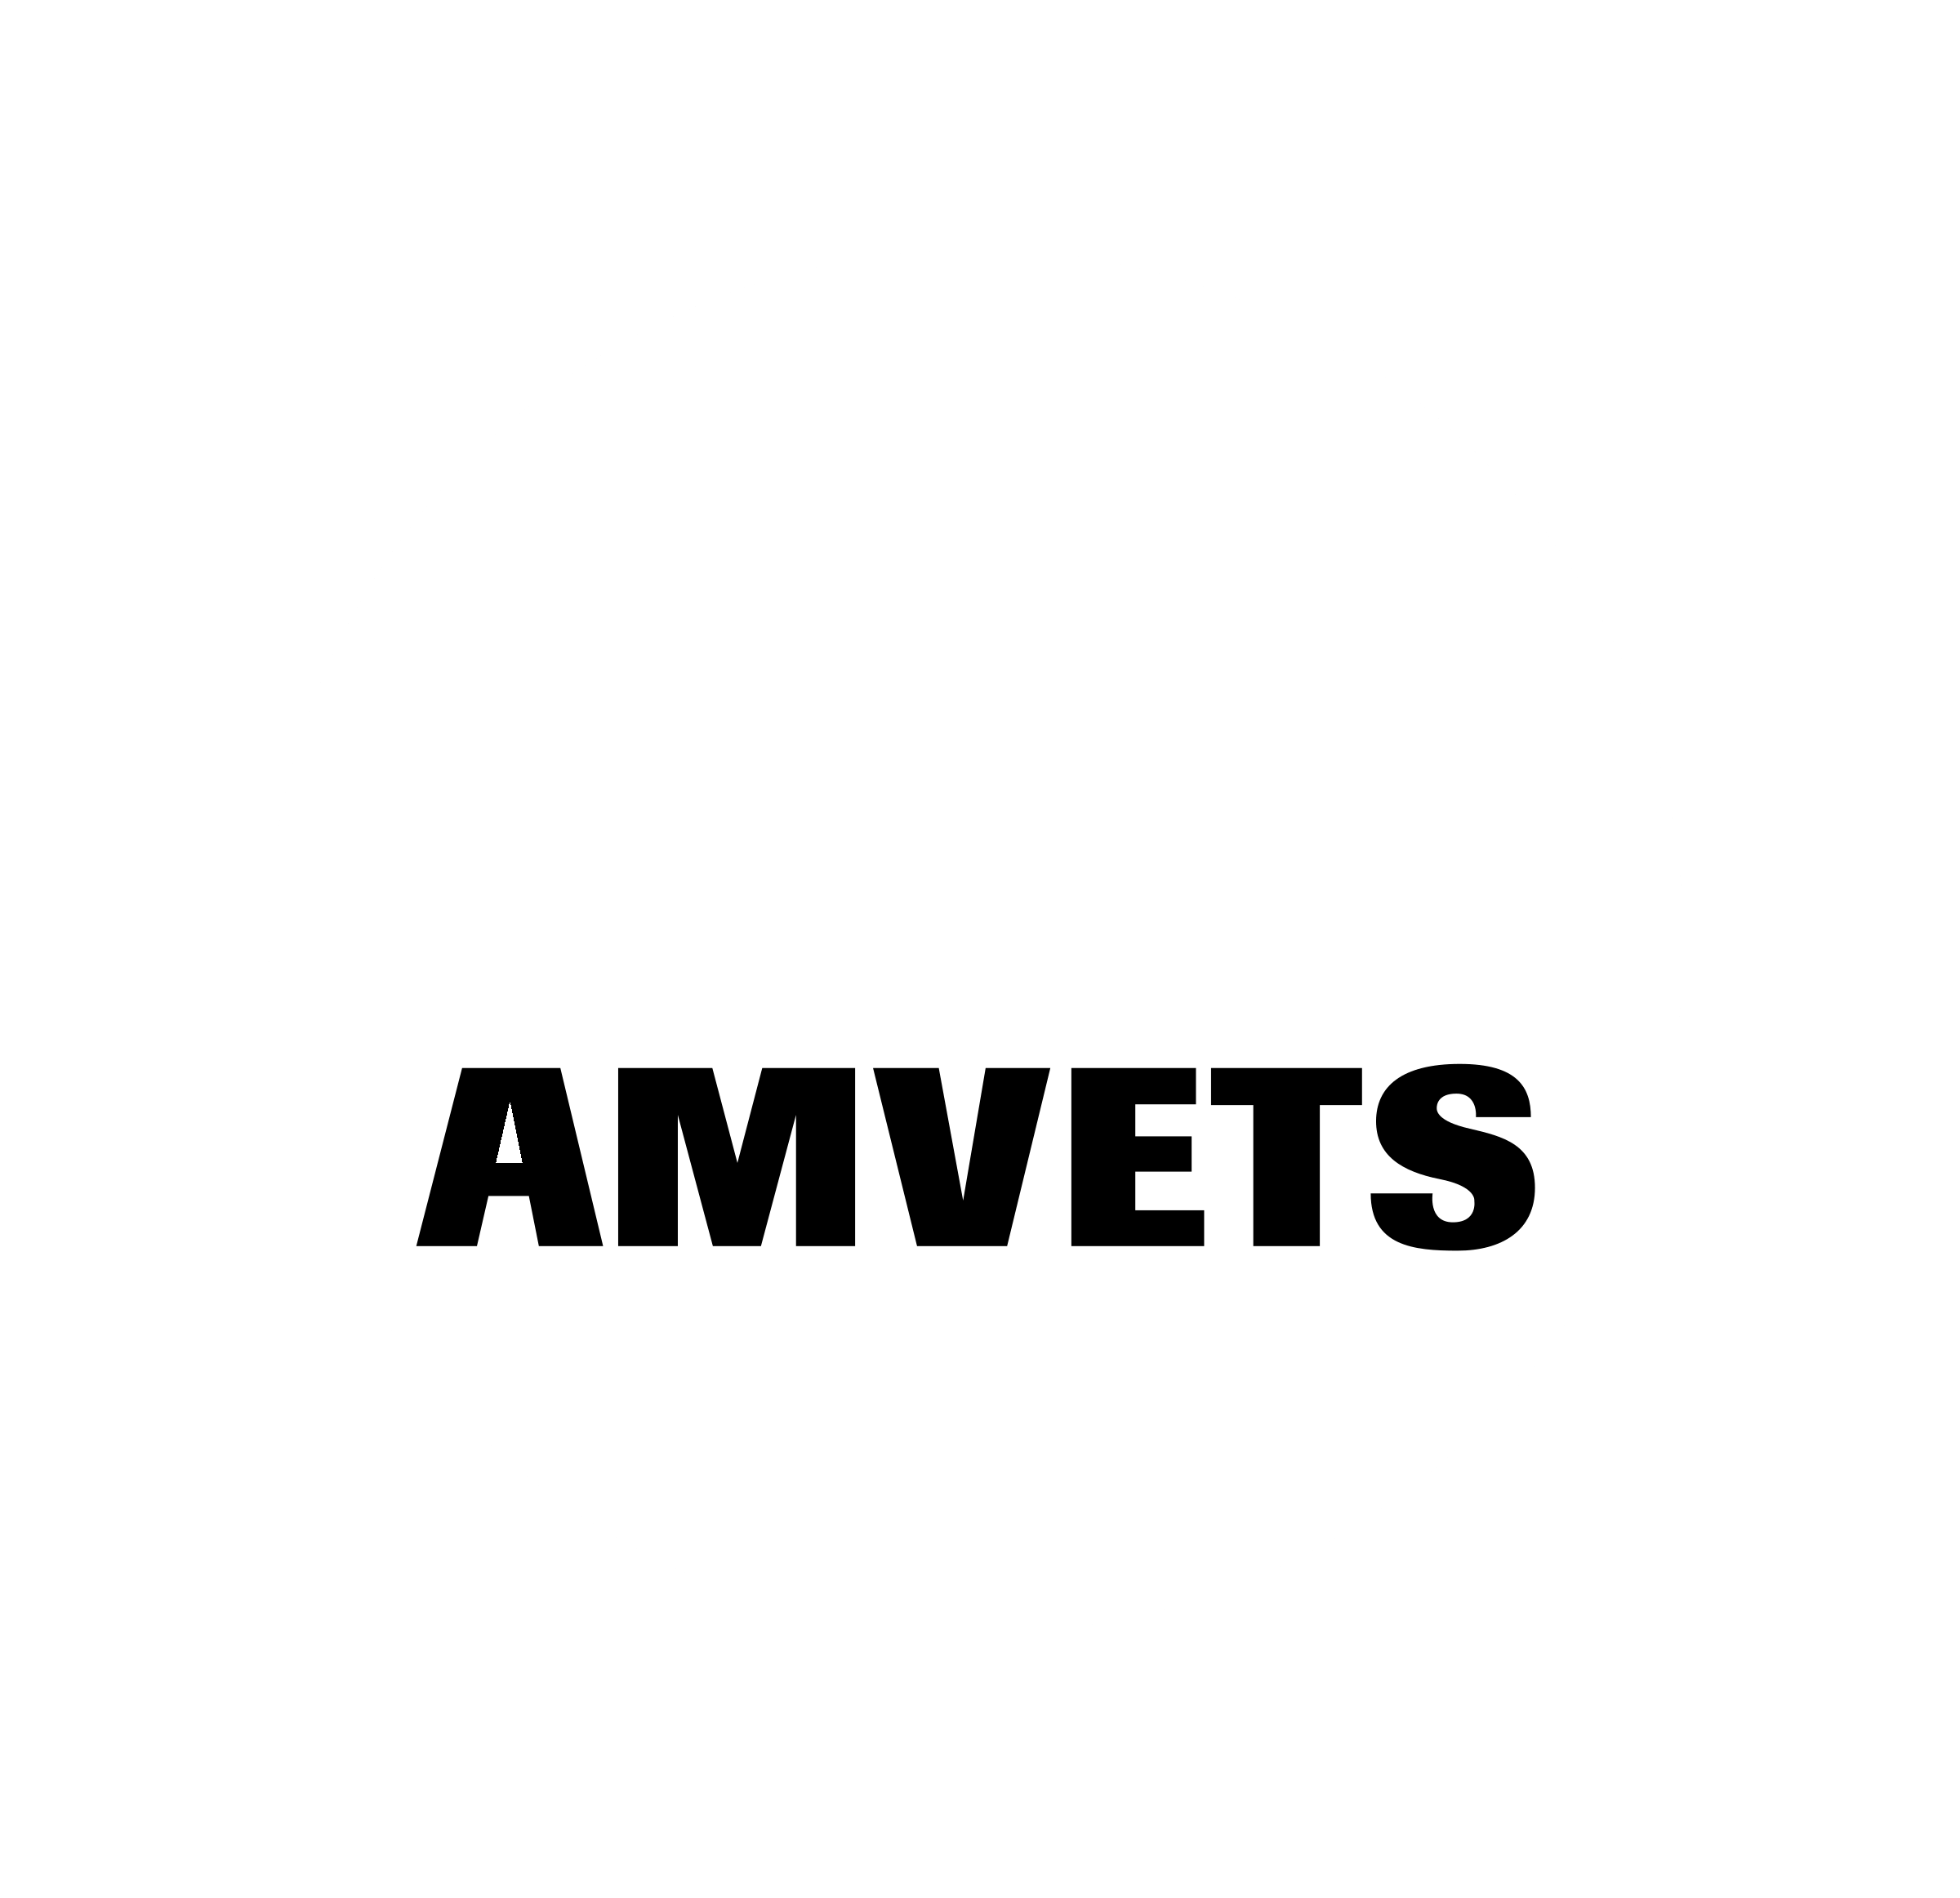 Amvets Logo - Amvets Logo PNG Transparent & SVG Vector - Freebie Supply